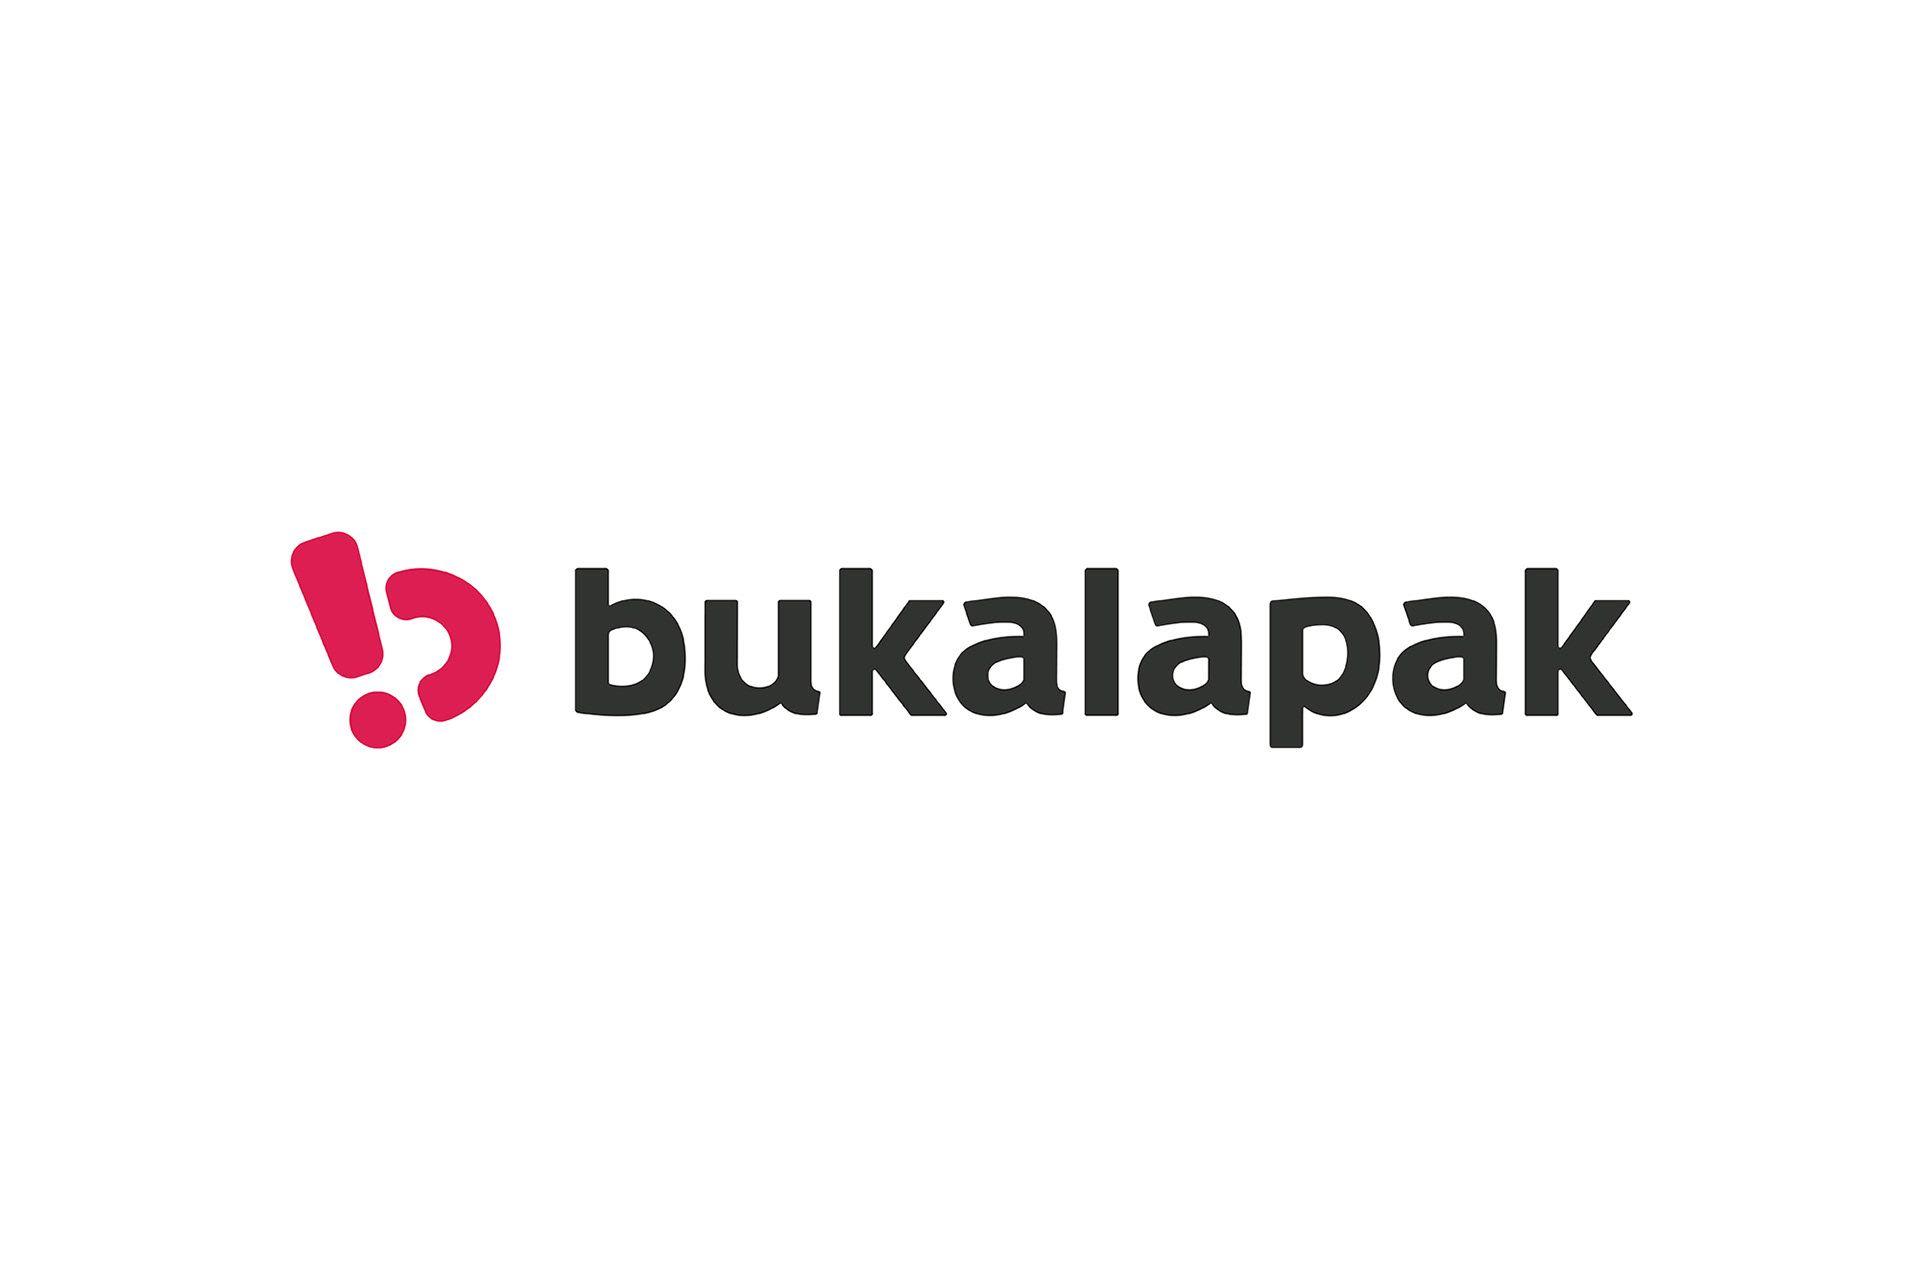 bukalapak Logo - Bukalapak | Behance